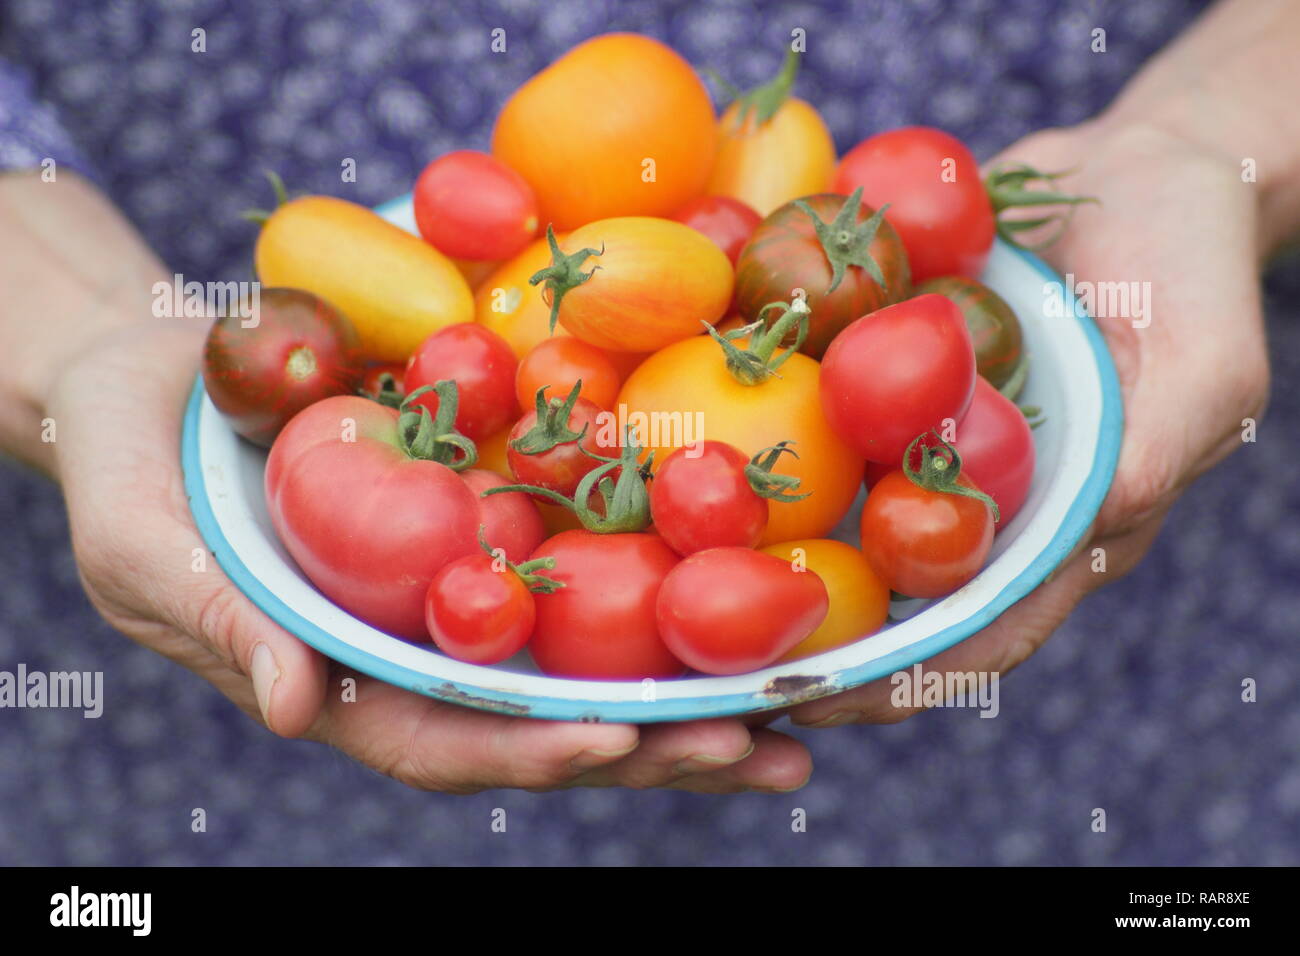 Solanum lycopersicum. La donna presenta appena preso cimelio di pomodori in un piatto. Nella foto includono Darby striped,Chadwick cherry red Pera & Tibet apple Foto Stock